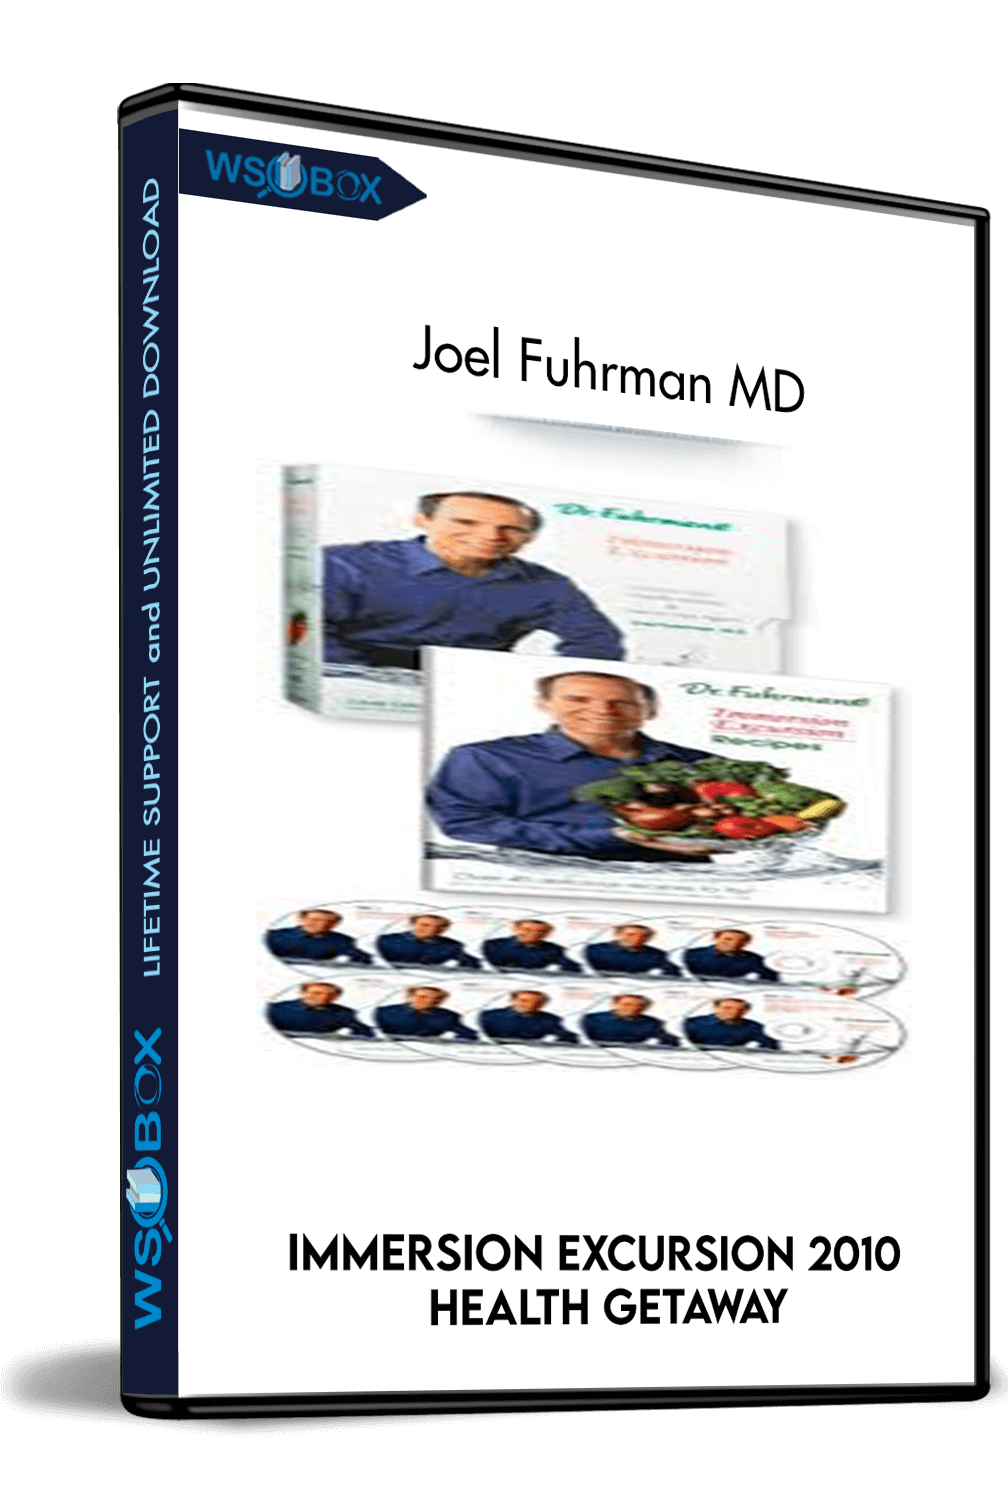 immersion-excursion-2010-health-getaway-joel-fuhrman-md